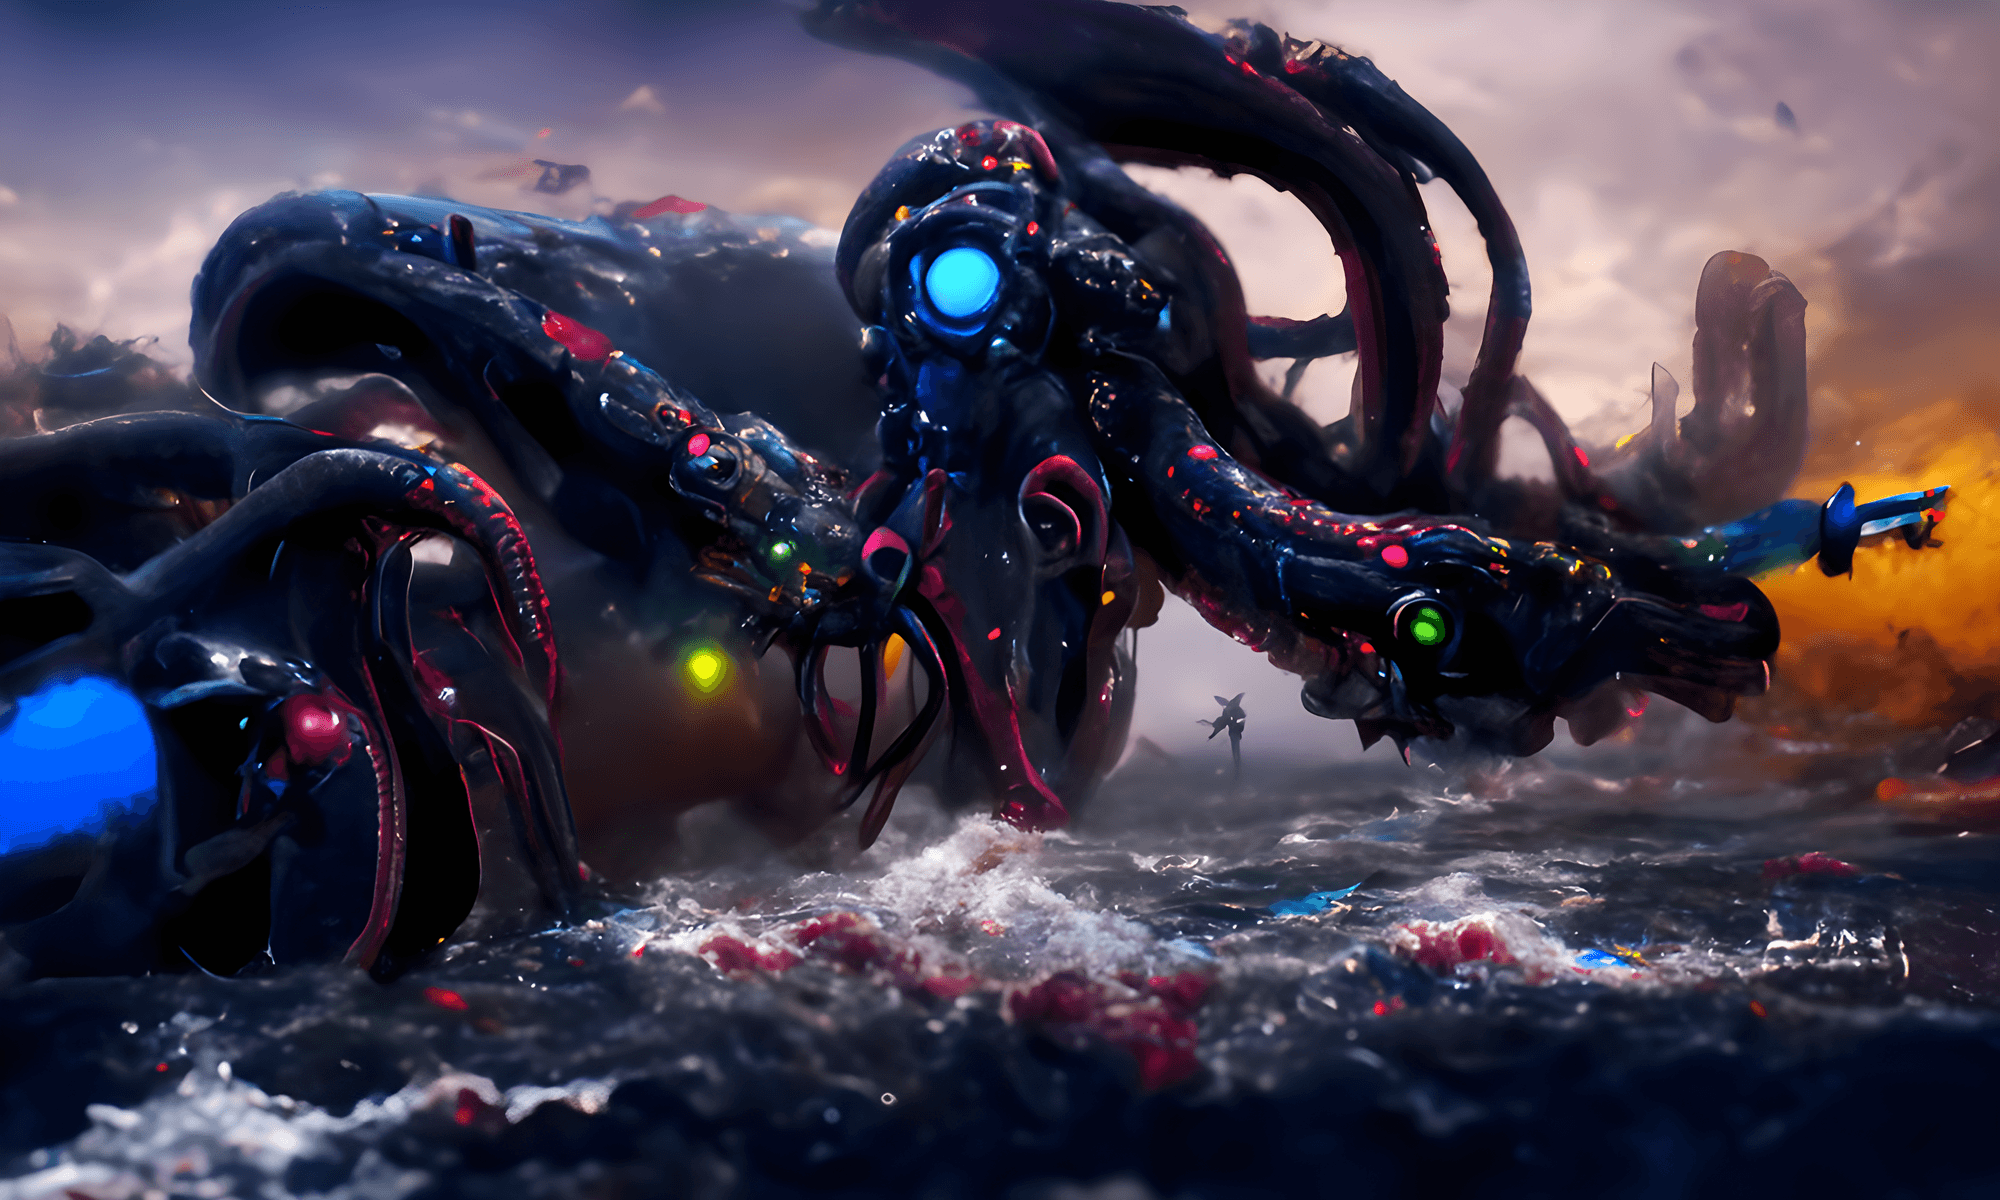 Kraken #04 - Cyber dreams 2022 | OpenSea